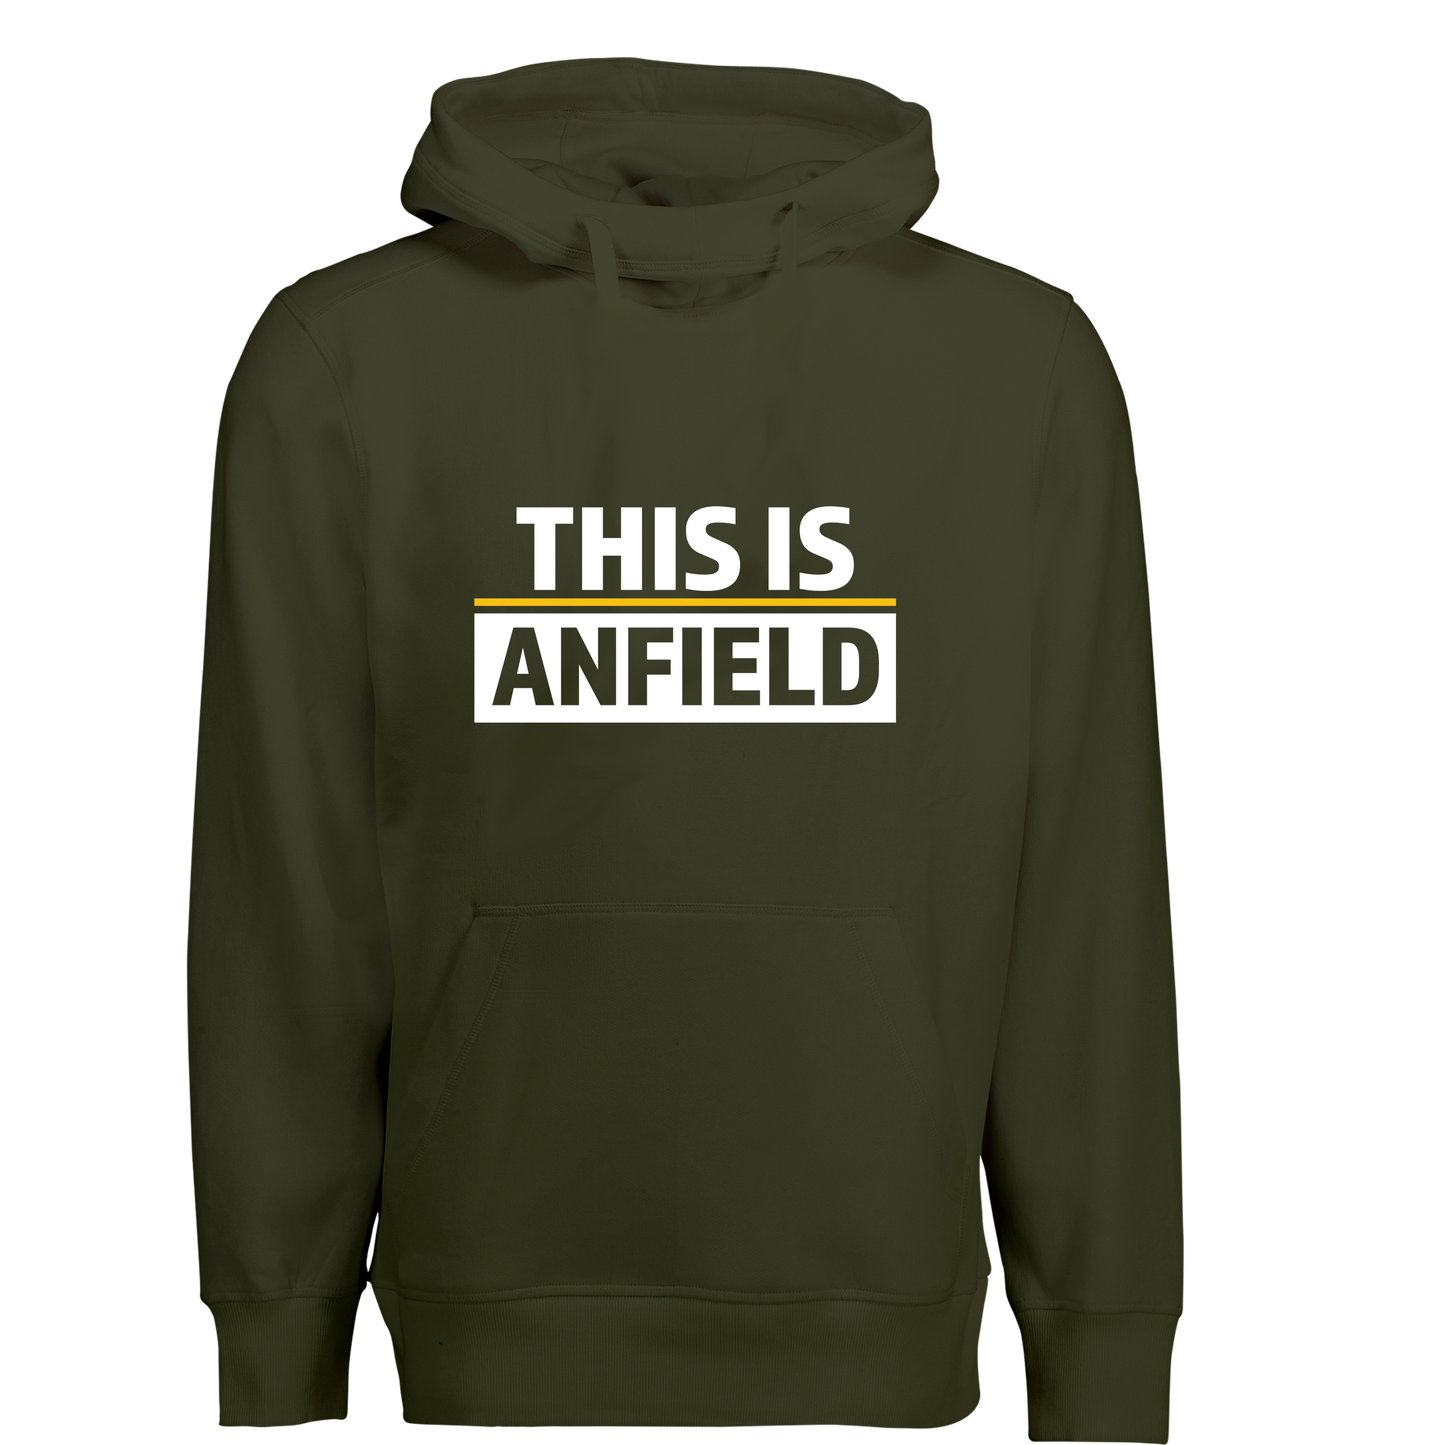 This is anfield - hoodie - Børn